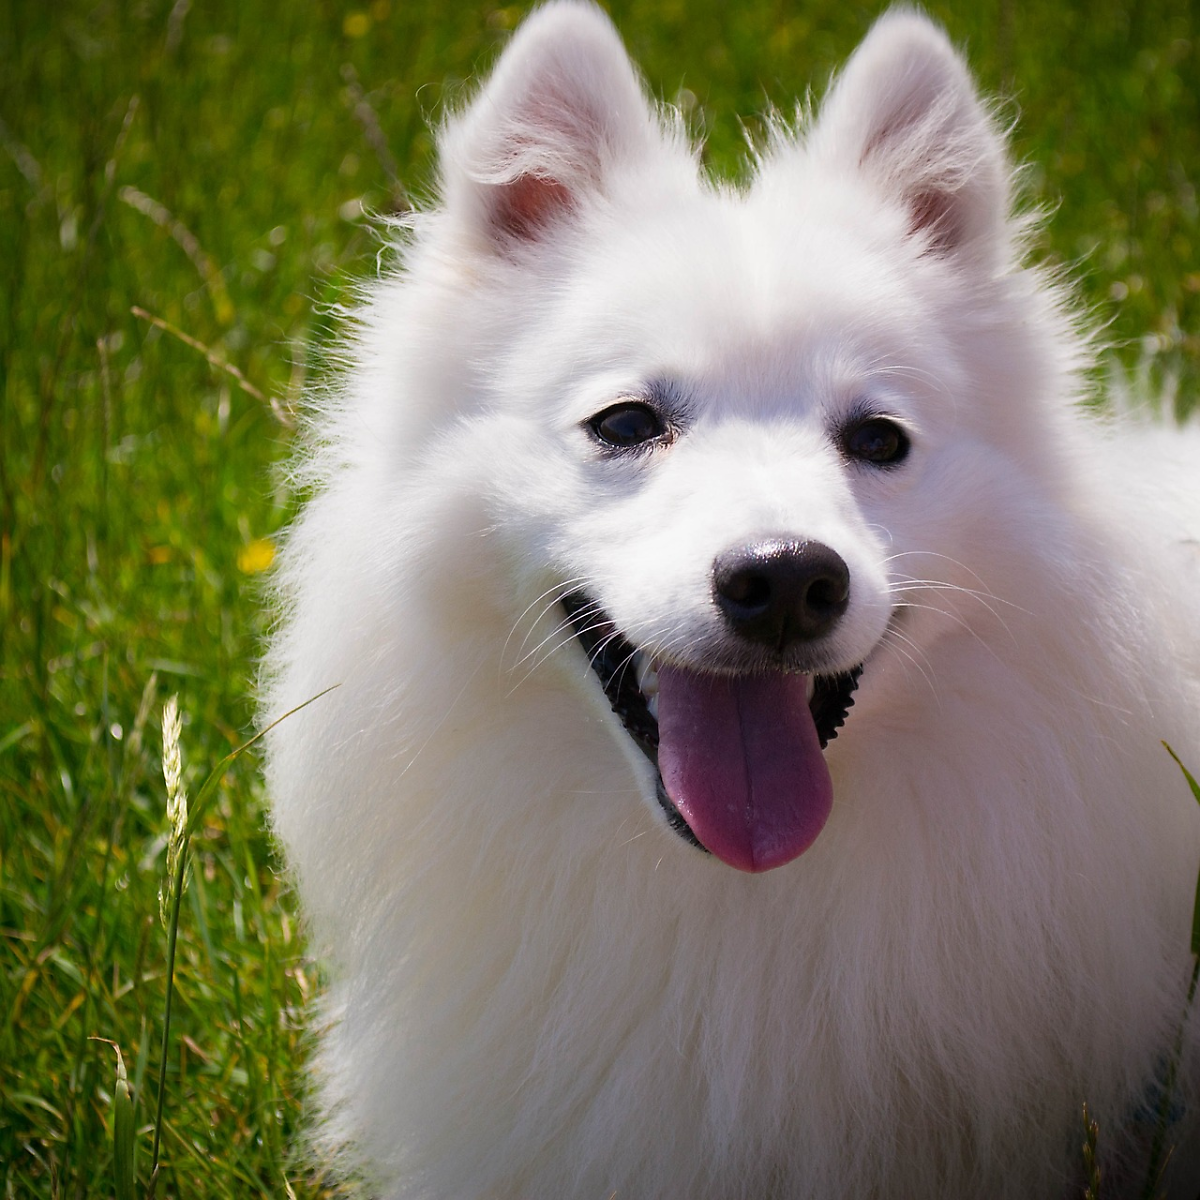 두 눈을 의심하게 만든 염색한 피카츄 강아지 논란. : 네이버 포스트